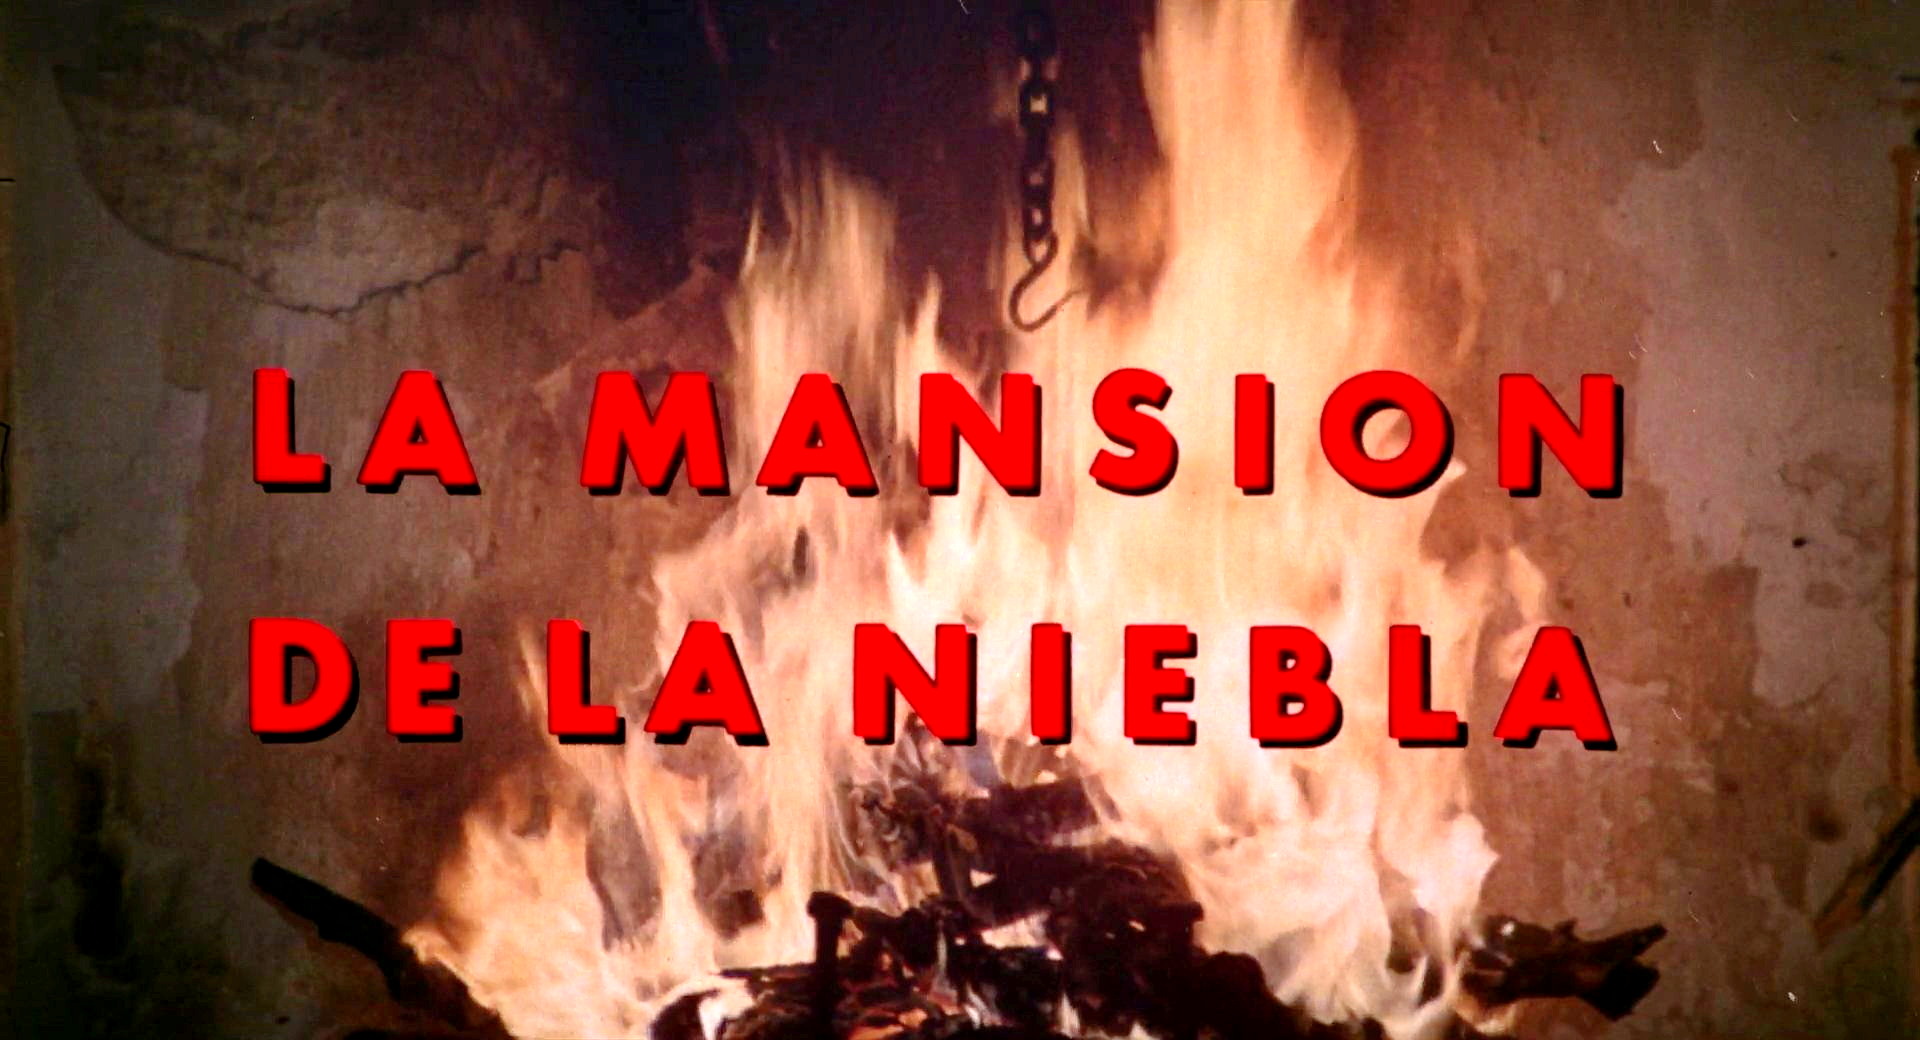 La mansión de la niebla (1972) Title.jpg